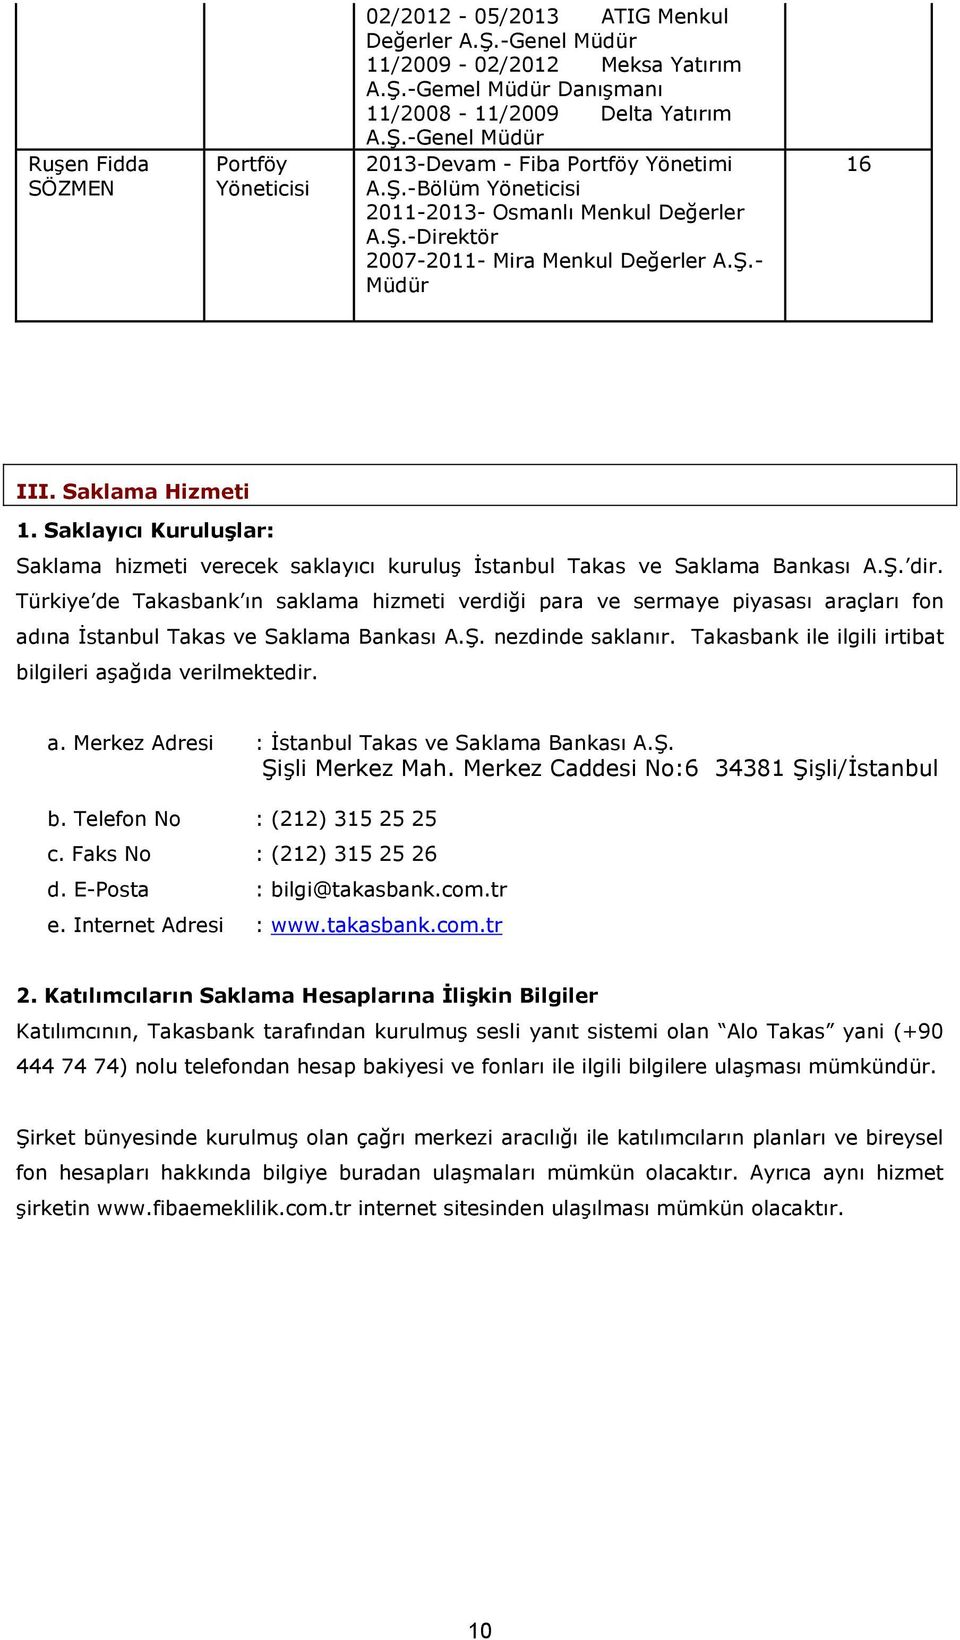 Saklayıcı Kuruluşlar: Saklama hizmeti verecek saklayıcı kuruluş İstanbul Takas ve Saklama Bankası A.Ş. dir.